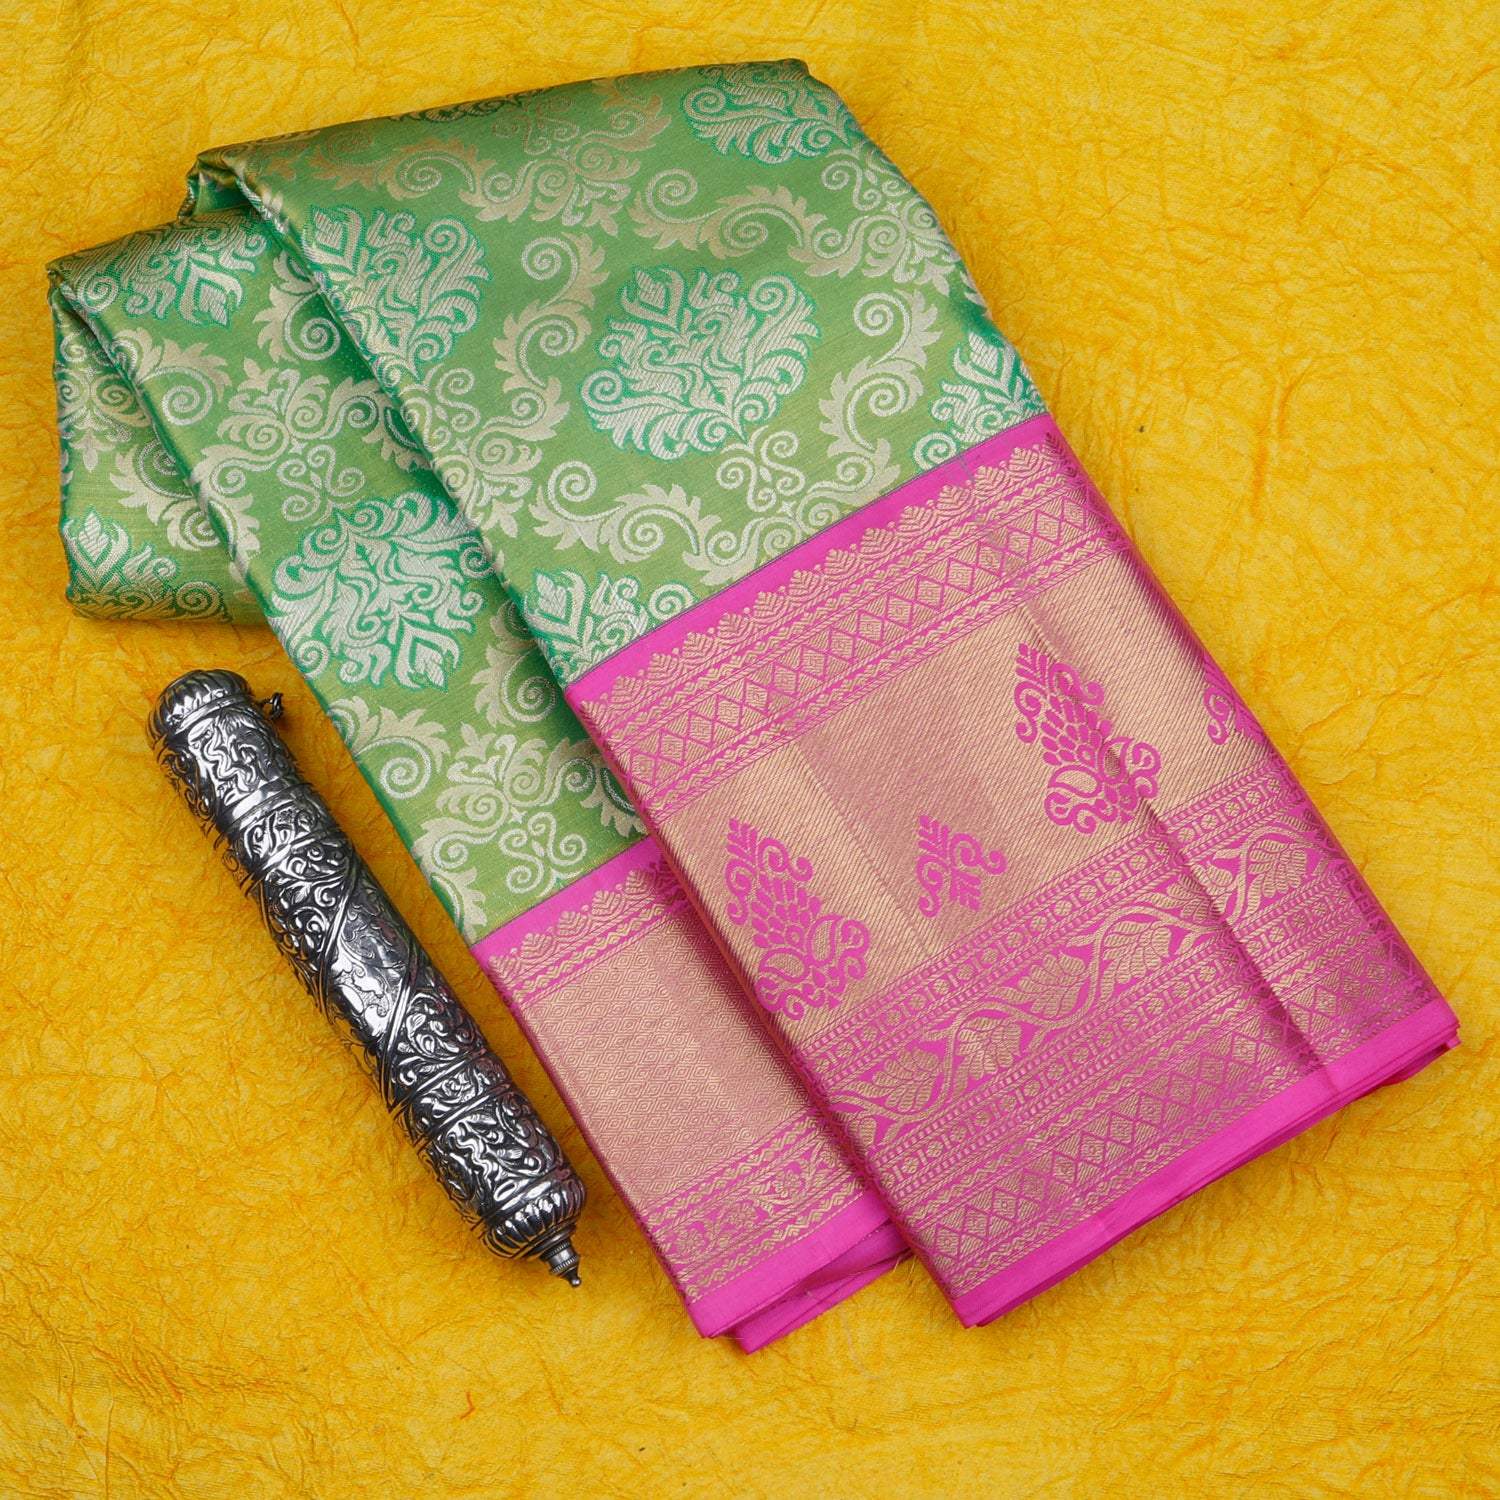 Green Kanjivaram Silk Saree With Floral Pattern - Singhania's